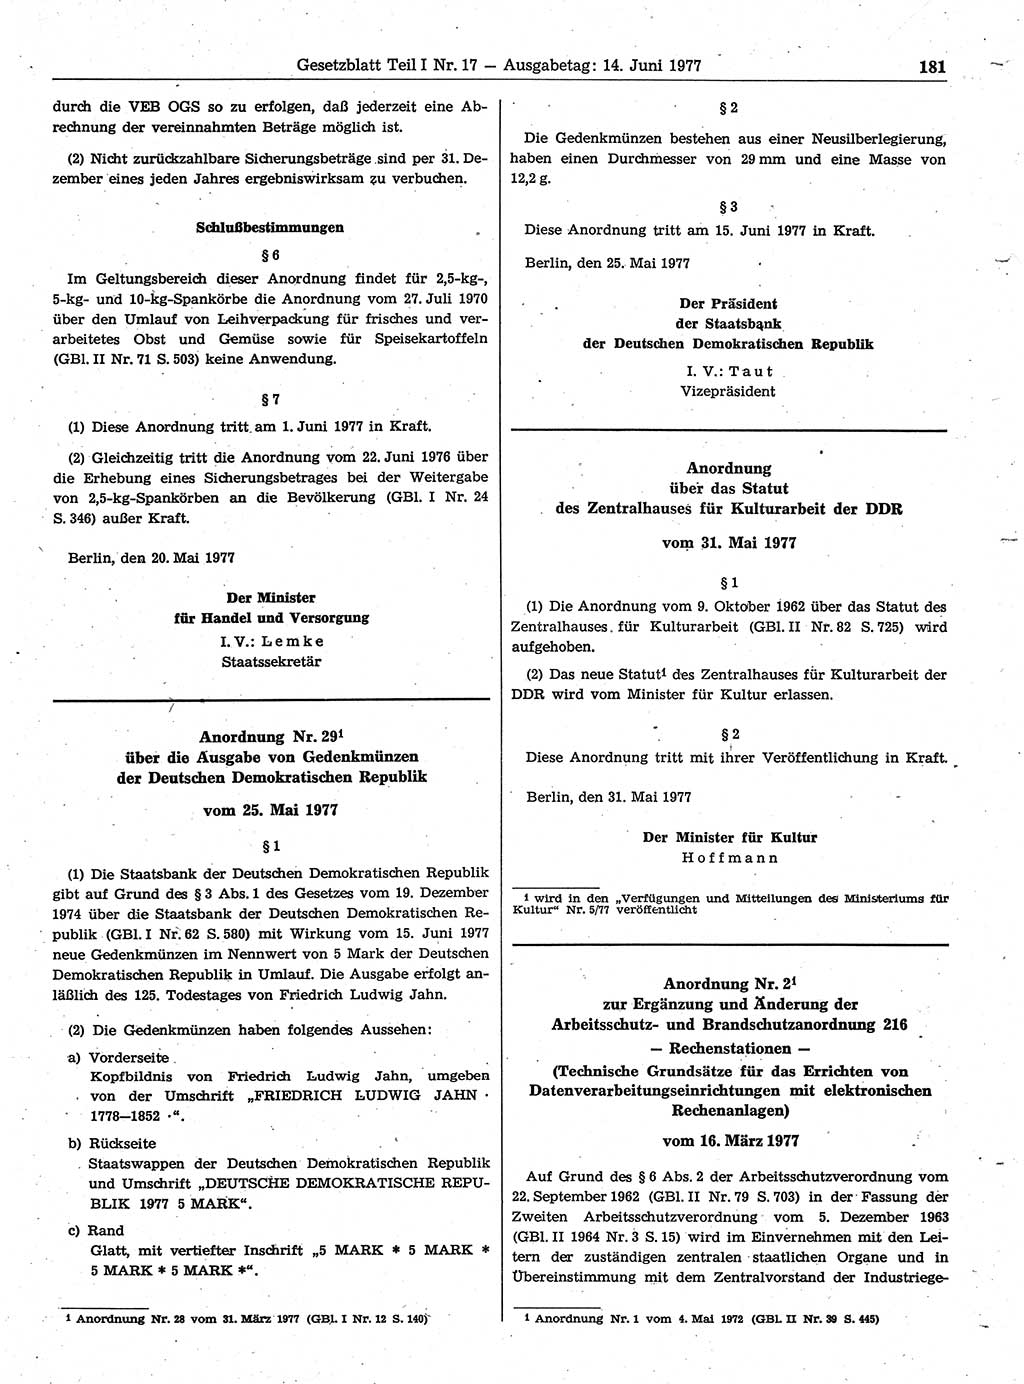 Gesetzblatt (GBl.) der Deutschen Demokratischen Republik (DDR) Teil Ⅰ 1977, Seite 181 (GBl. DDR Ⅰ 1977, S. 181)